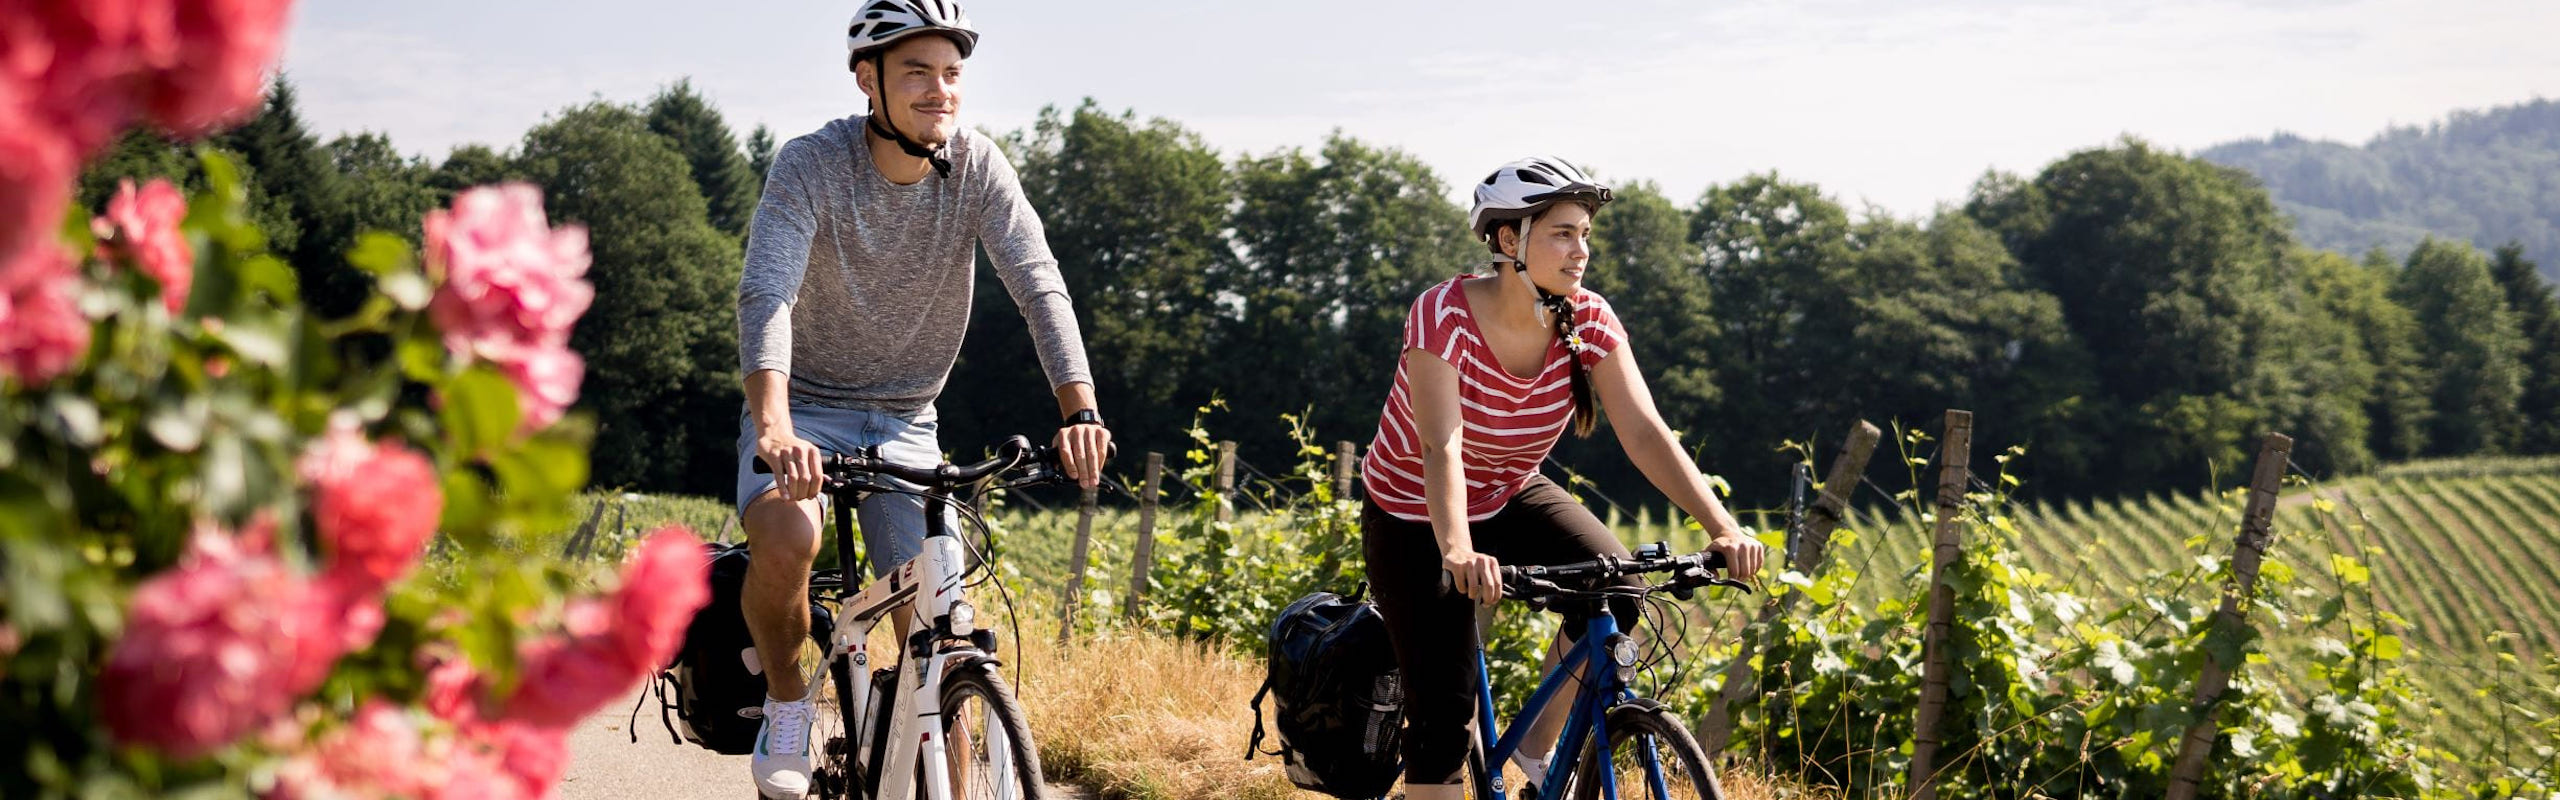 Zwei Radfahrer fahren über einen grünen Weinberg